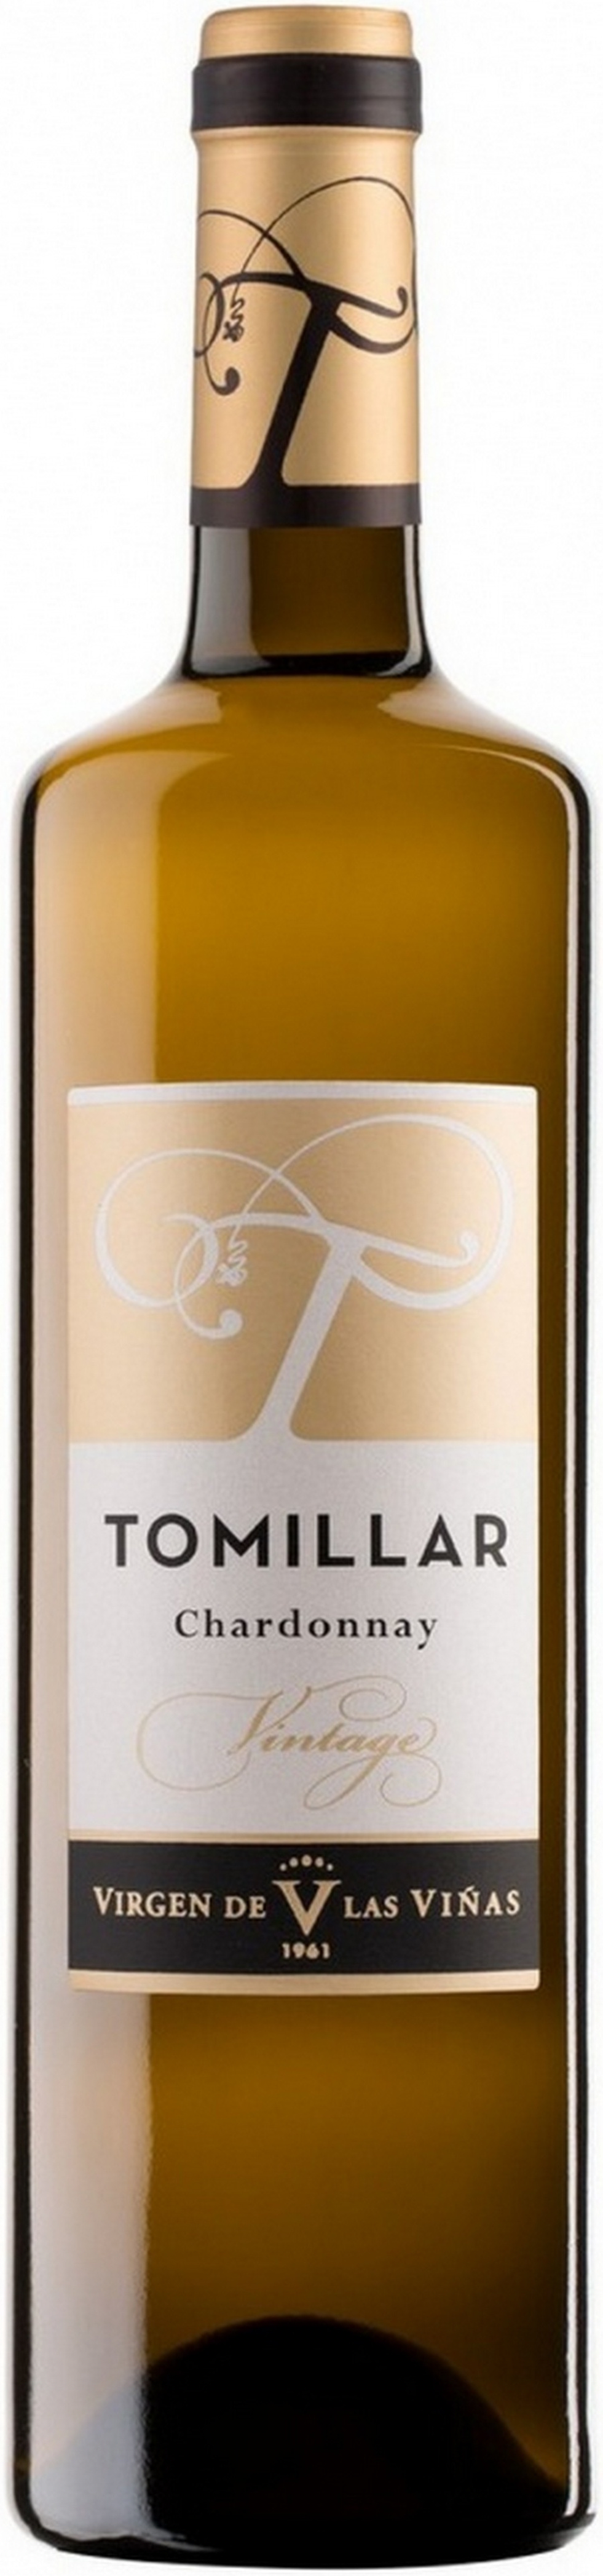 tomillar-chardonnay-2018